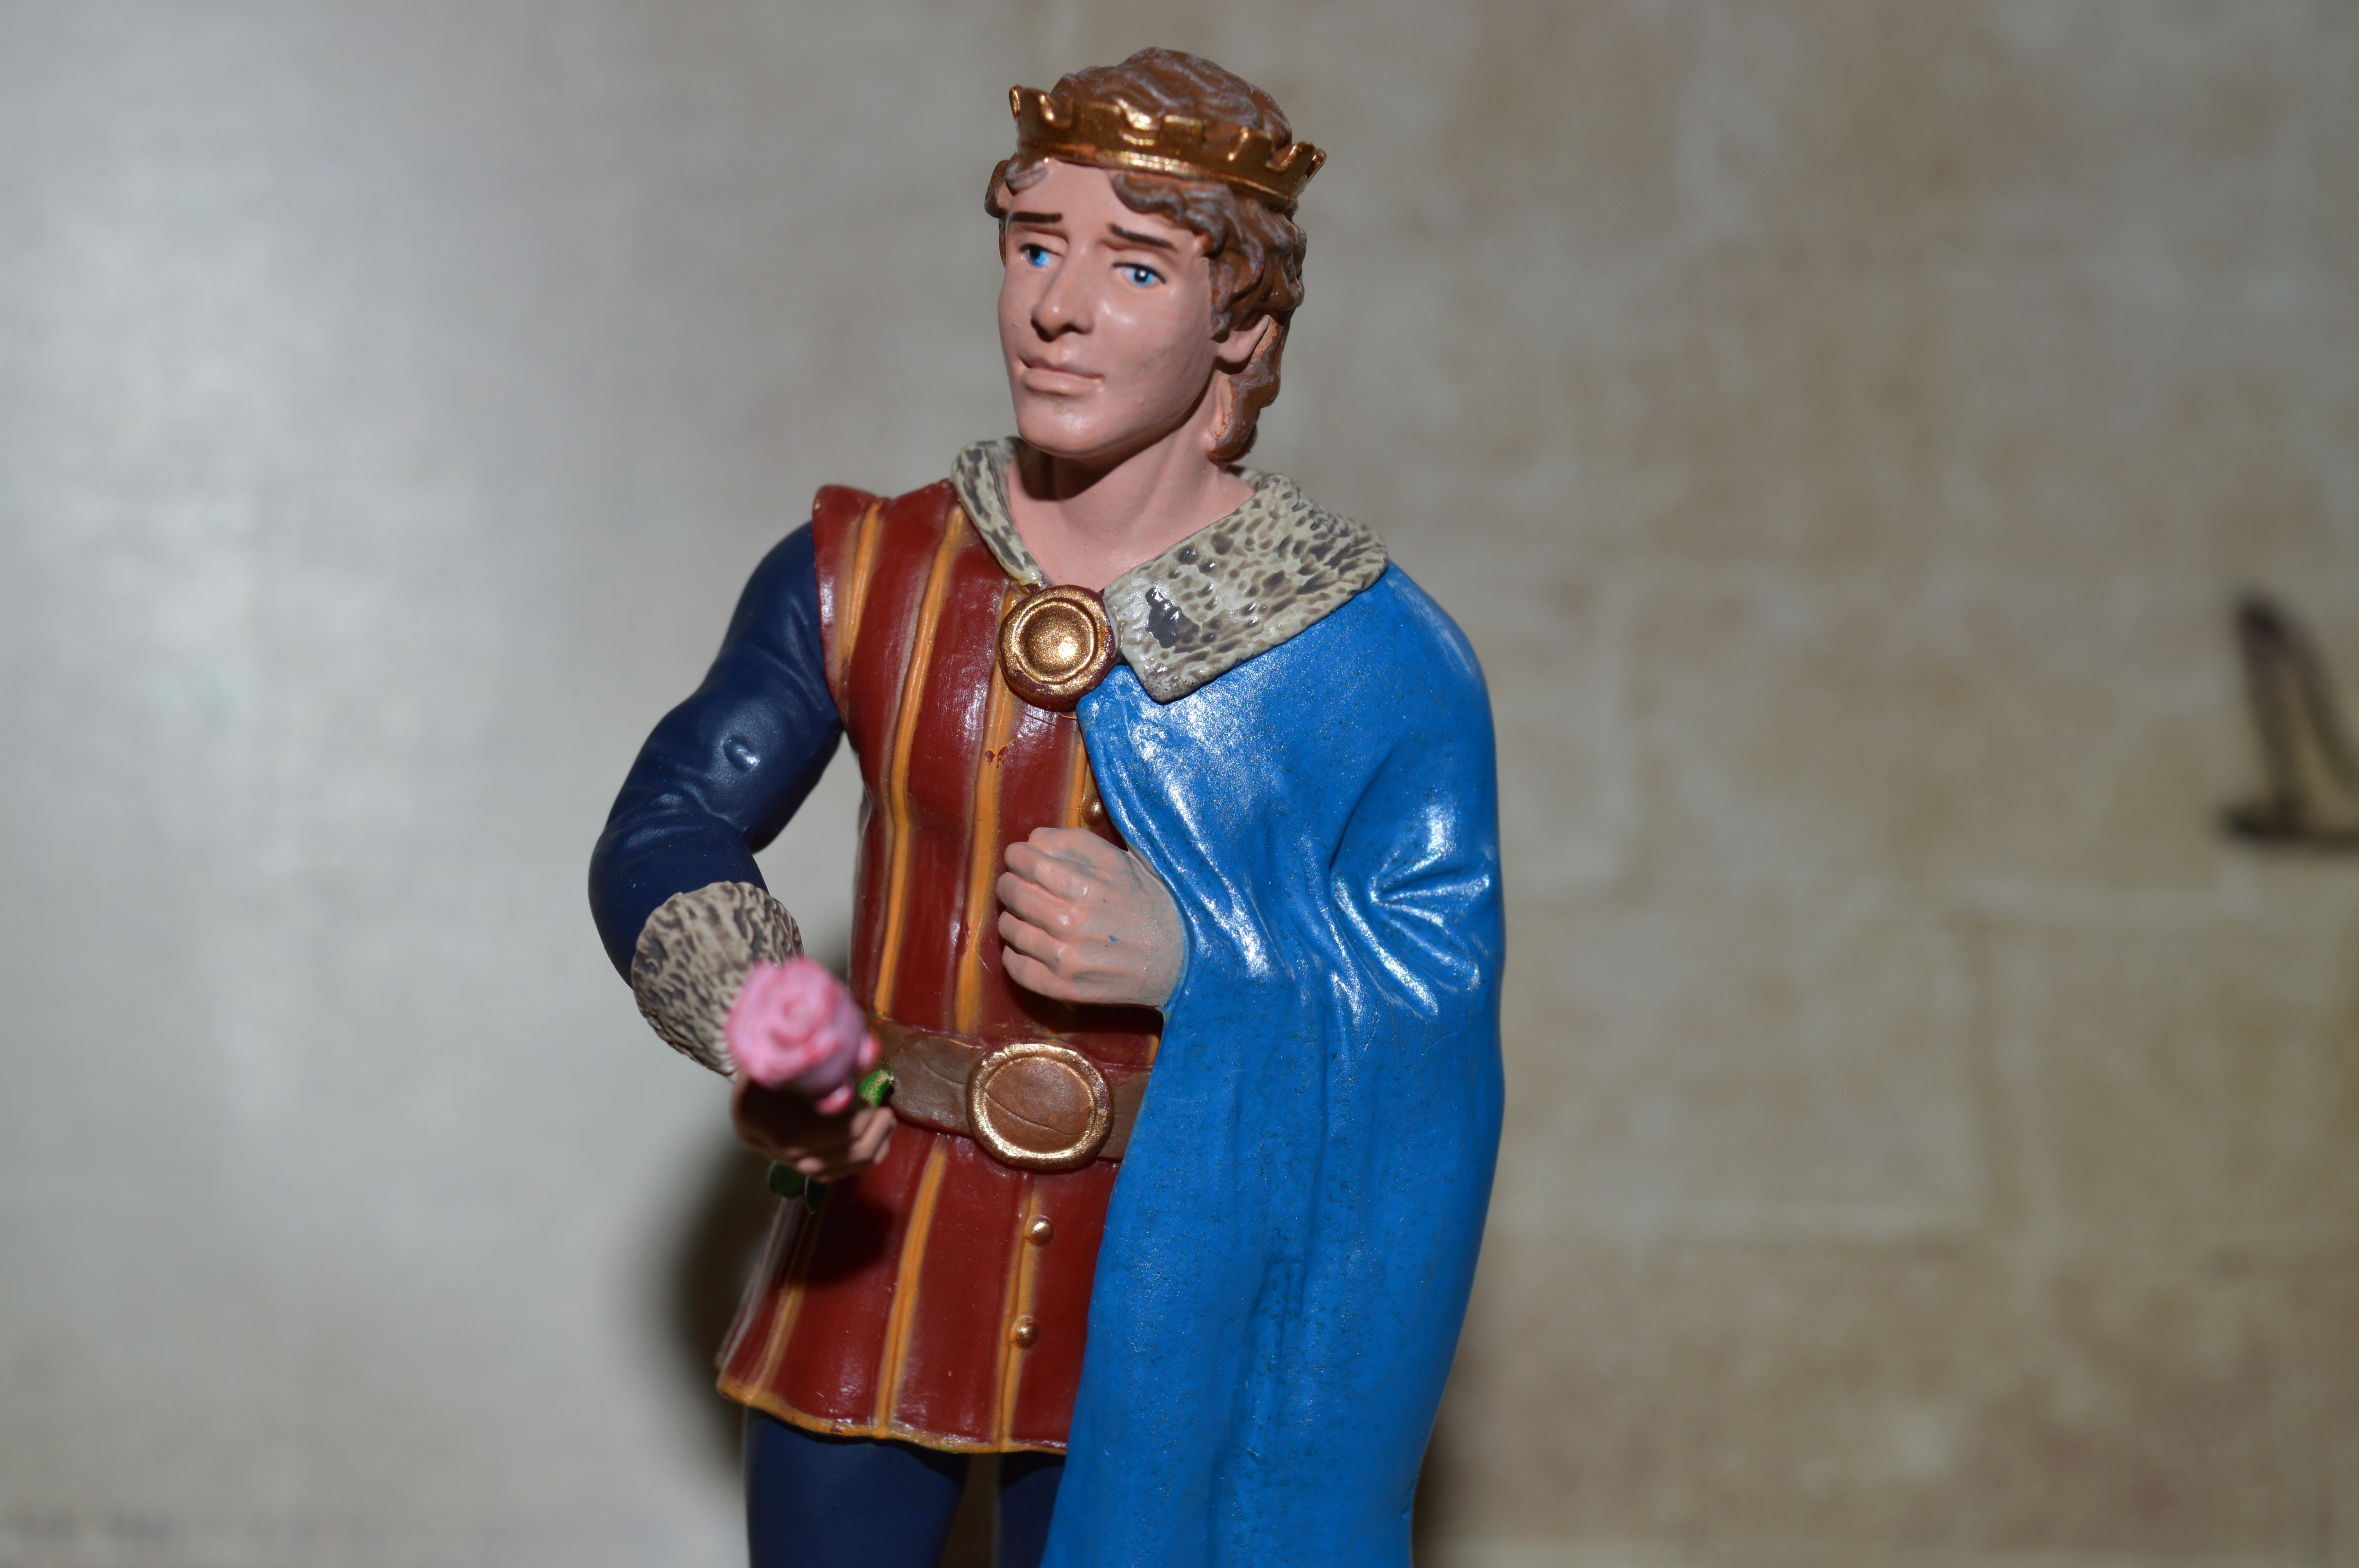 prince figurine